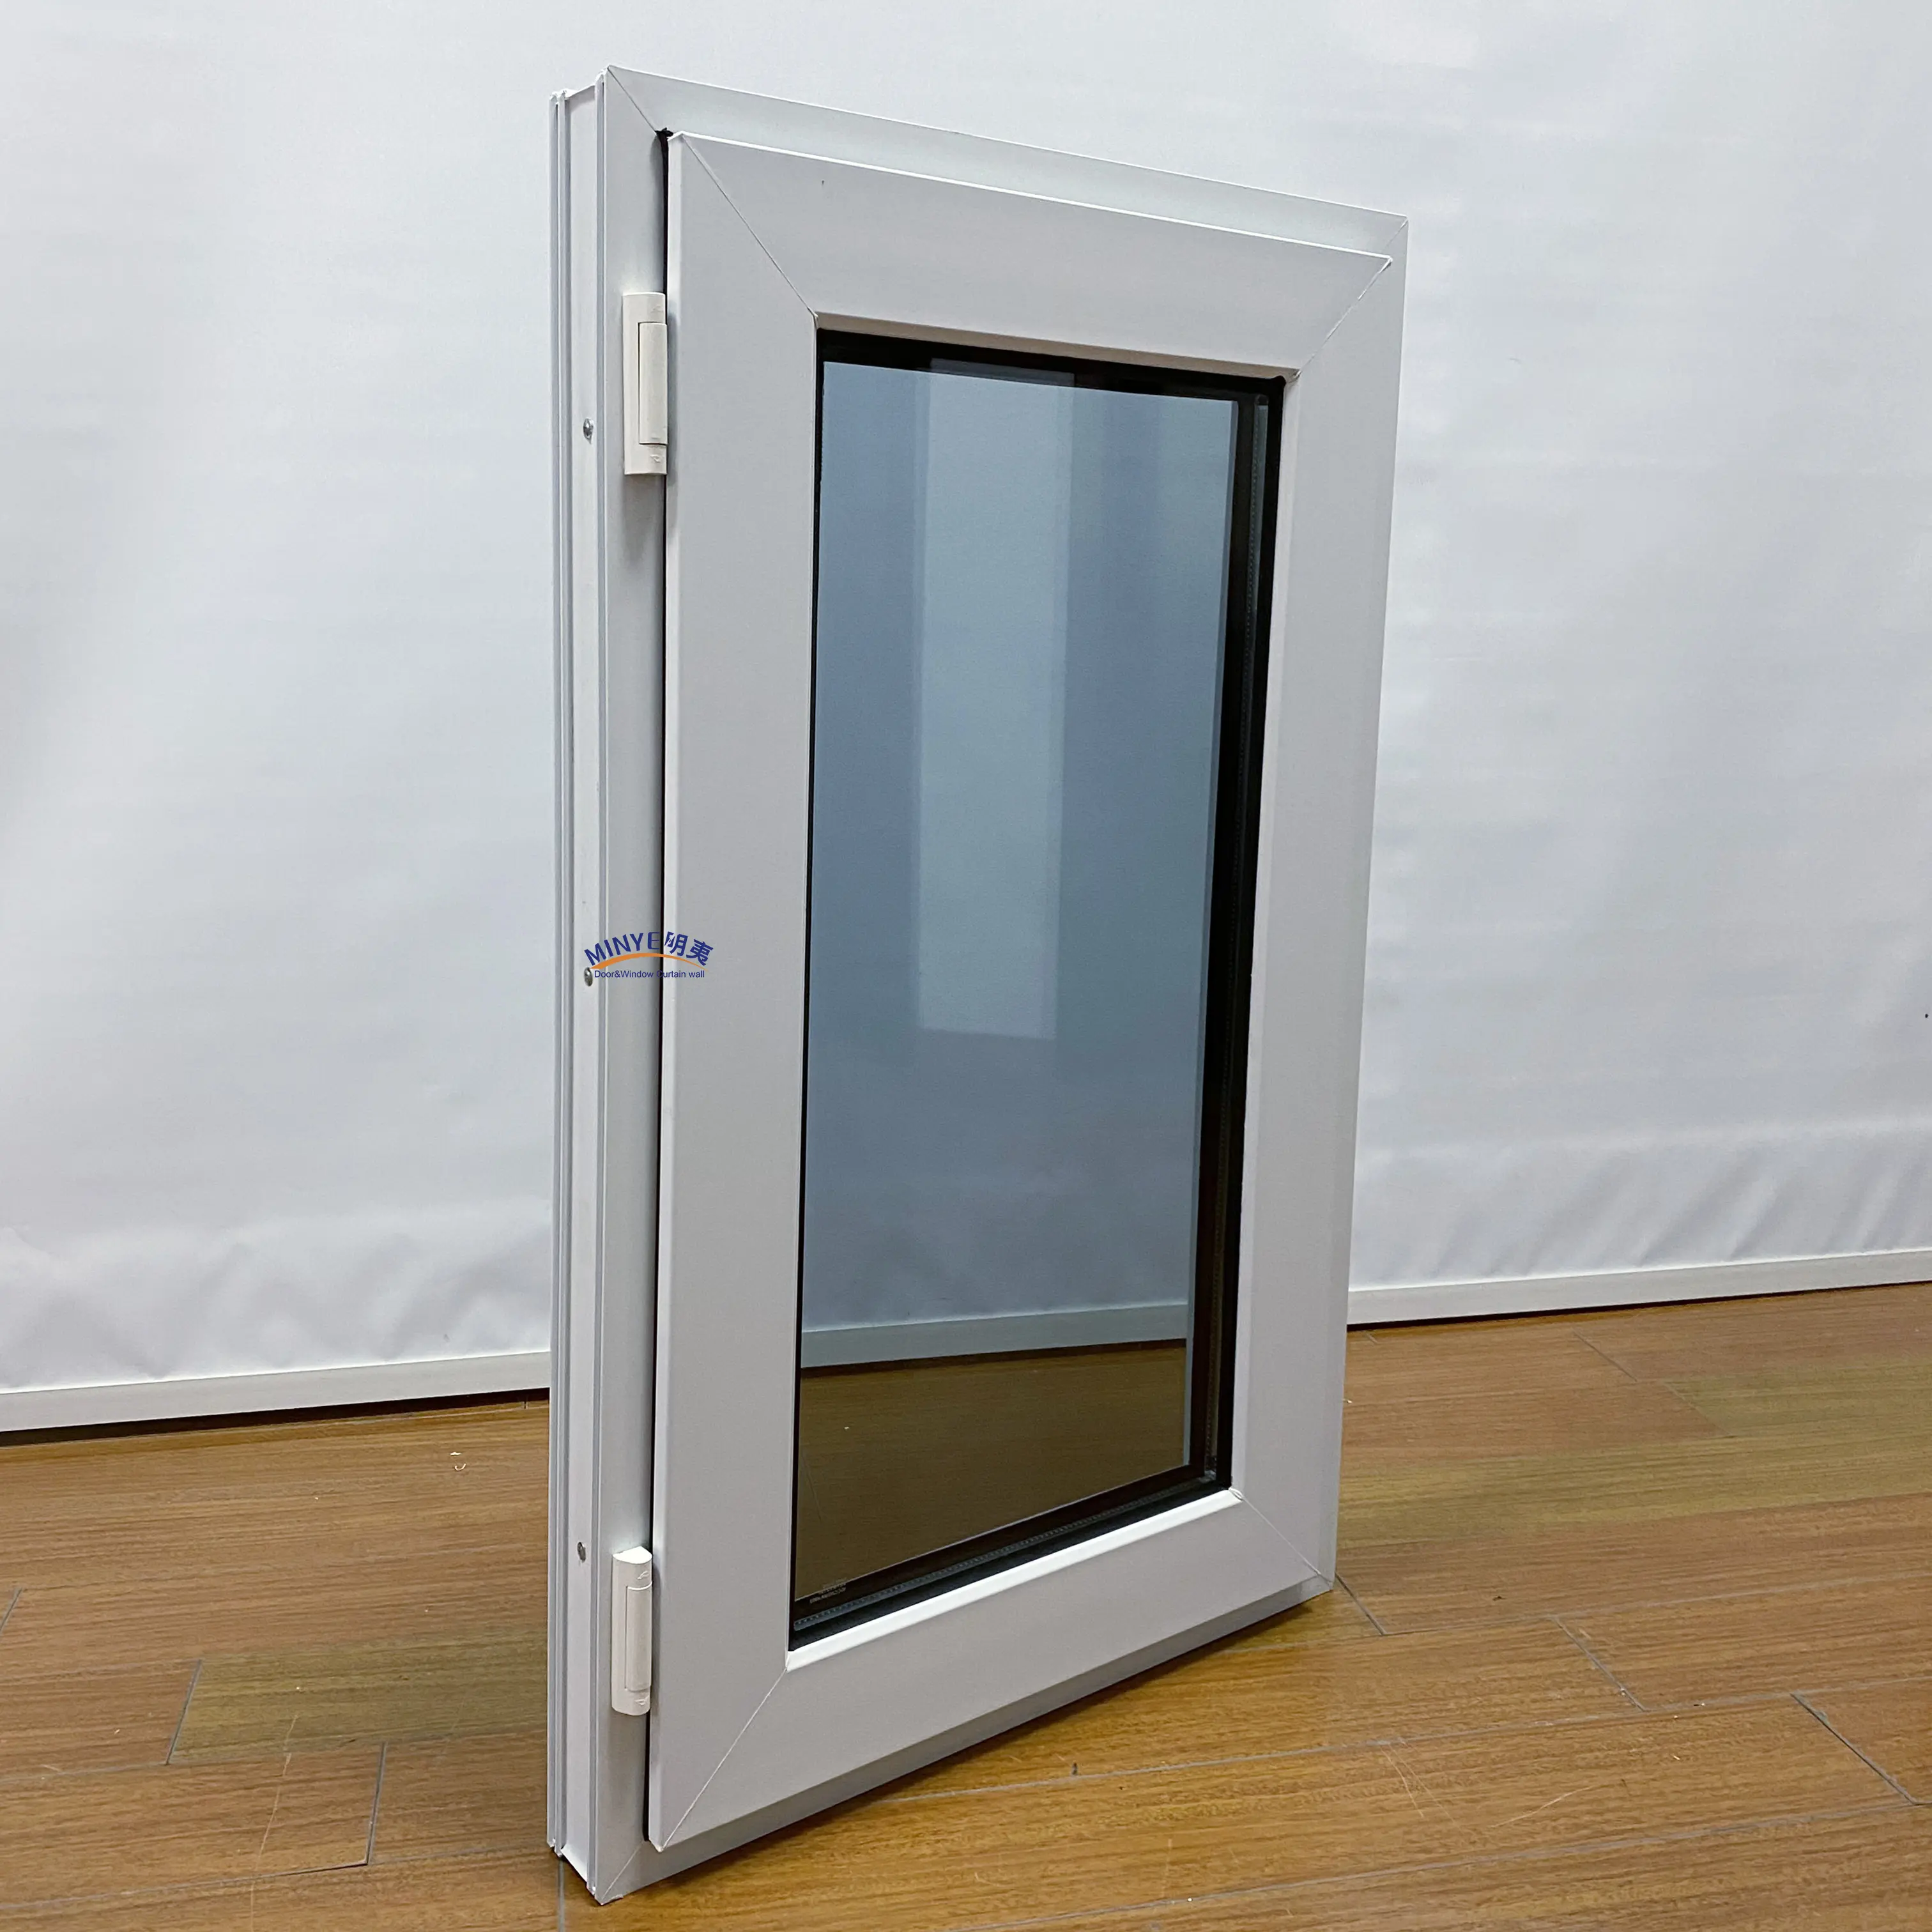 Mỹ thiết kế uPVC Windows đôi kính Swing PVC khuôn cửa sổ cửa sổ Vinyl cửa sổ